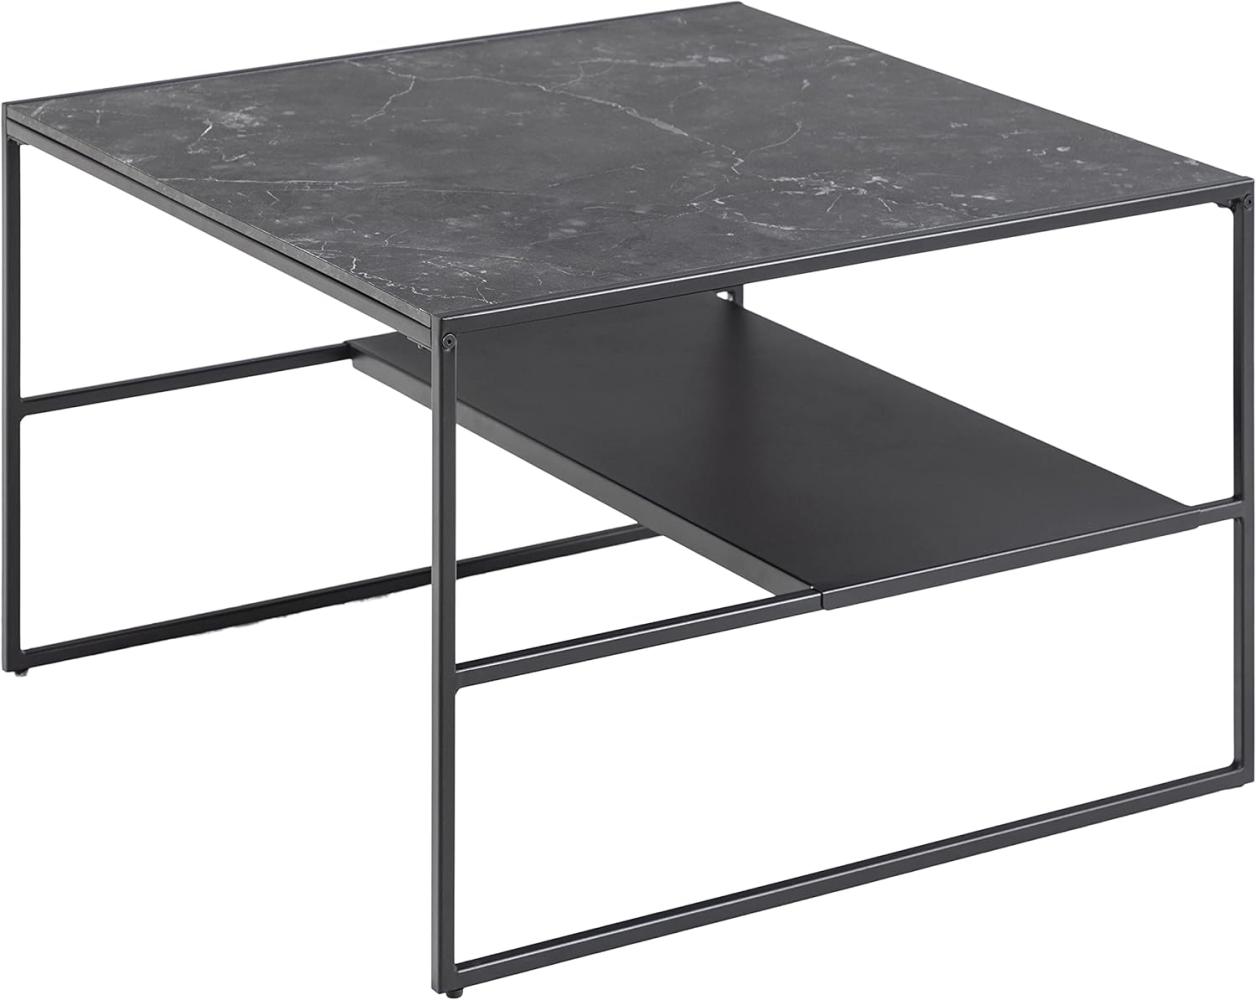 Amazon-Marke: Movian Couchtisch mit einer Ablage, marmorierte Tischplatte, schwarzes Metallgestell, 70. 1 x 44. 96 x 70. 1 cm, Quadratisch, Schwarz Bild 1